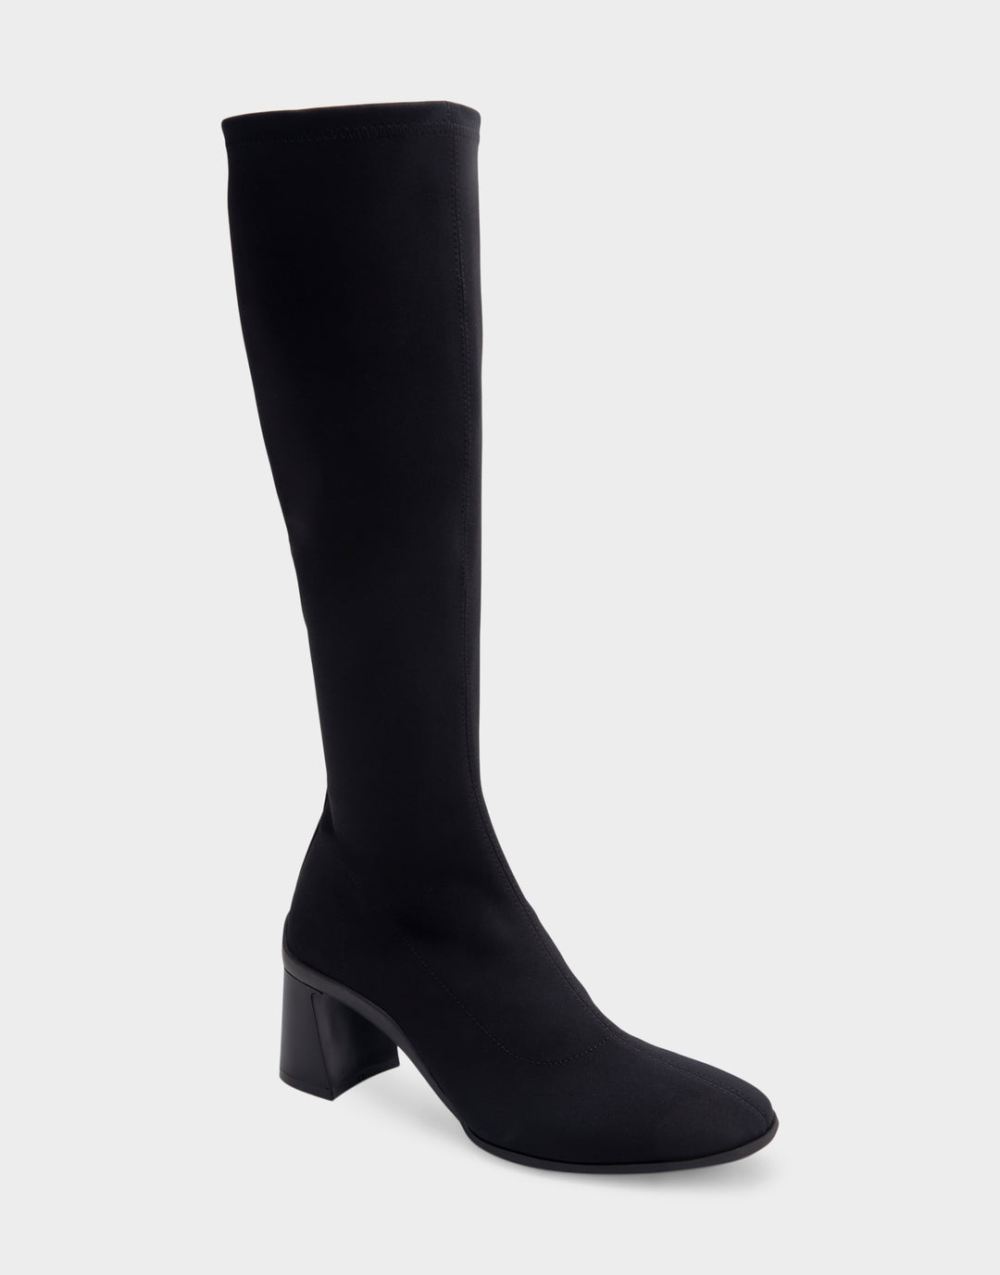 Women's | Centola Black Stretch Gabardine Fabric Sculpted Heel Tall Shaft Boot